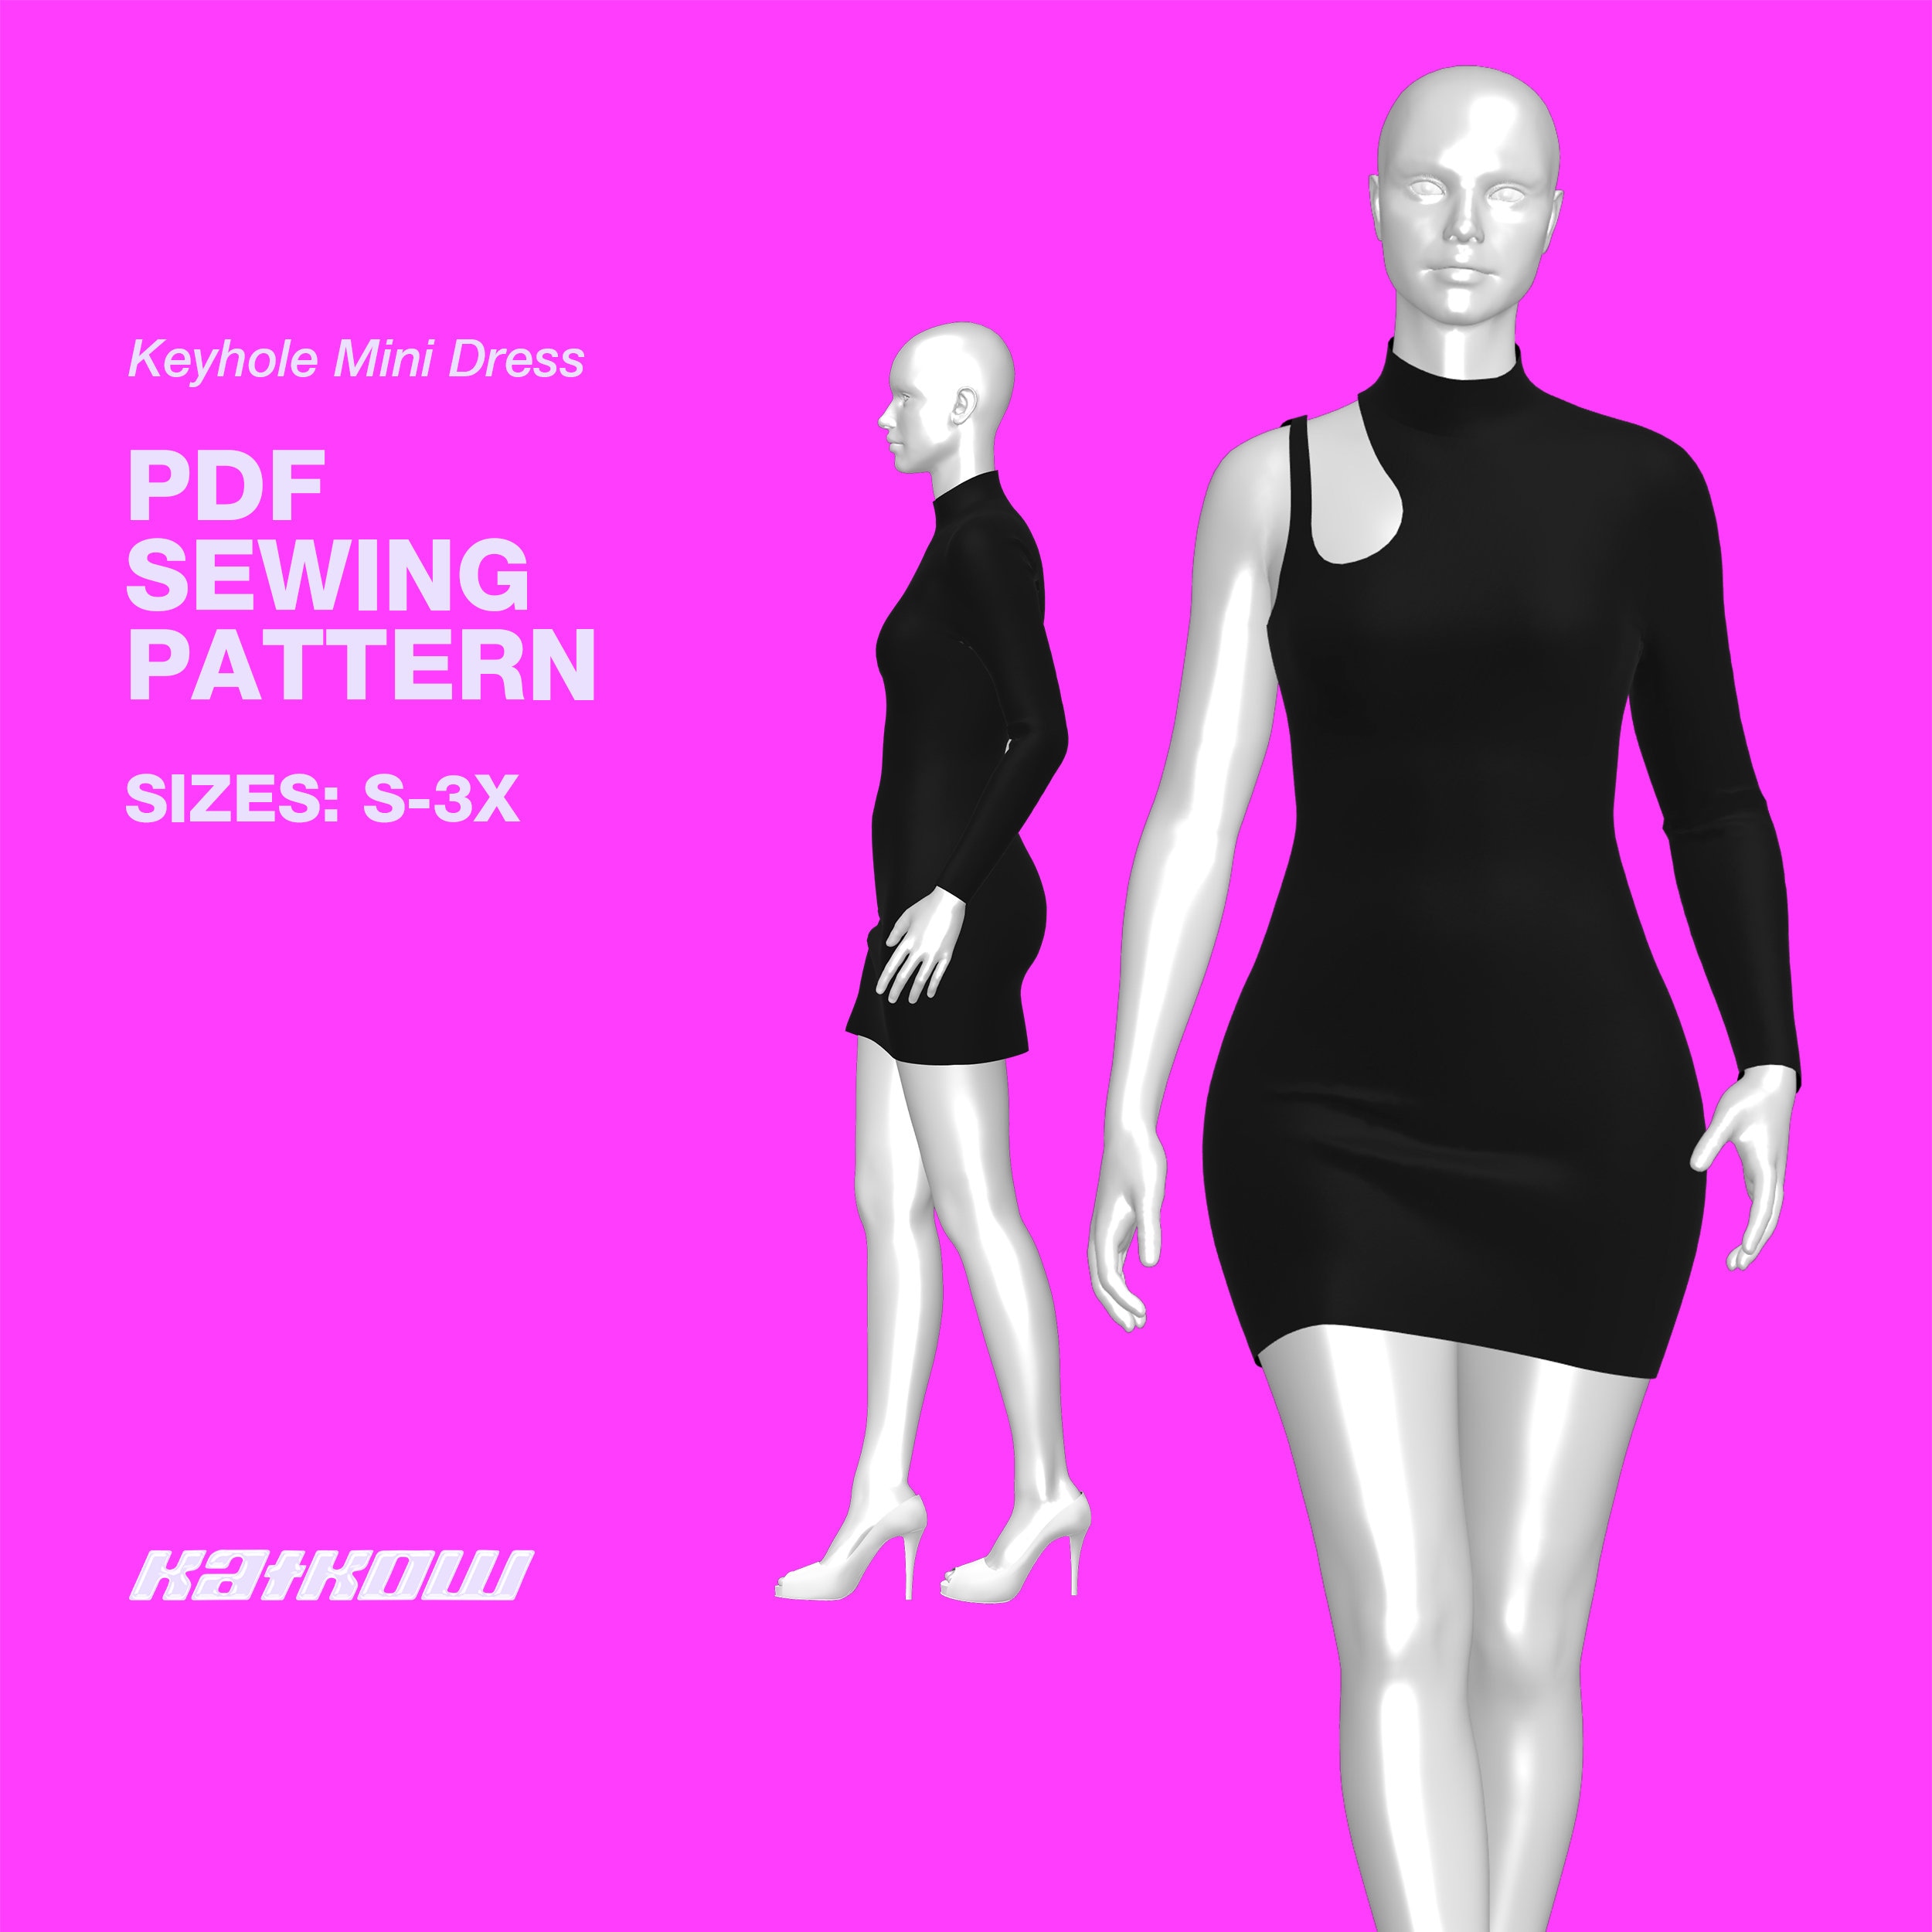 Maddy Euphoria Dress Sewing Pattern sizes S 4X PDF 